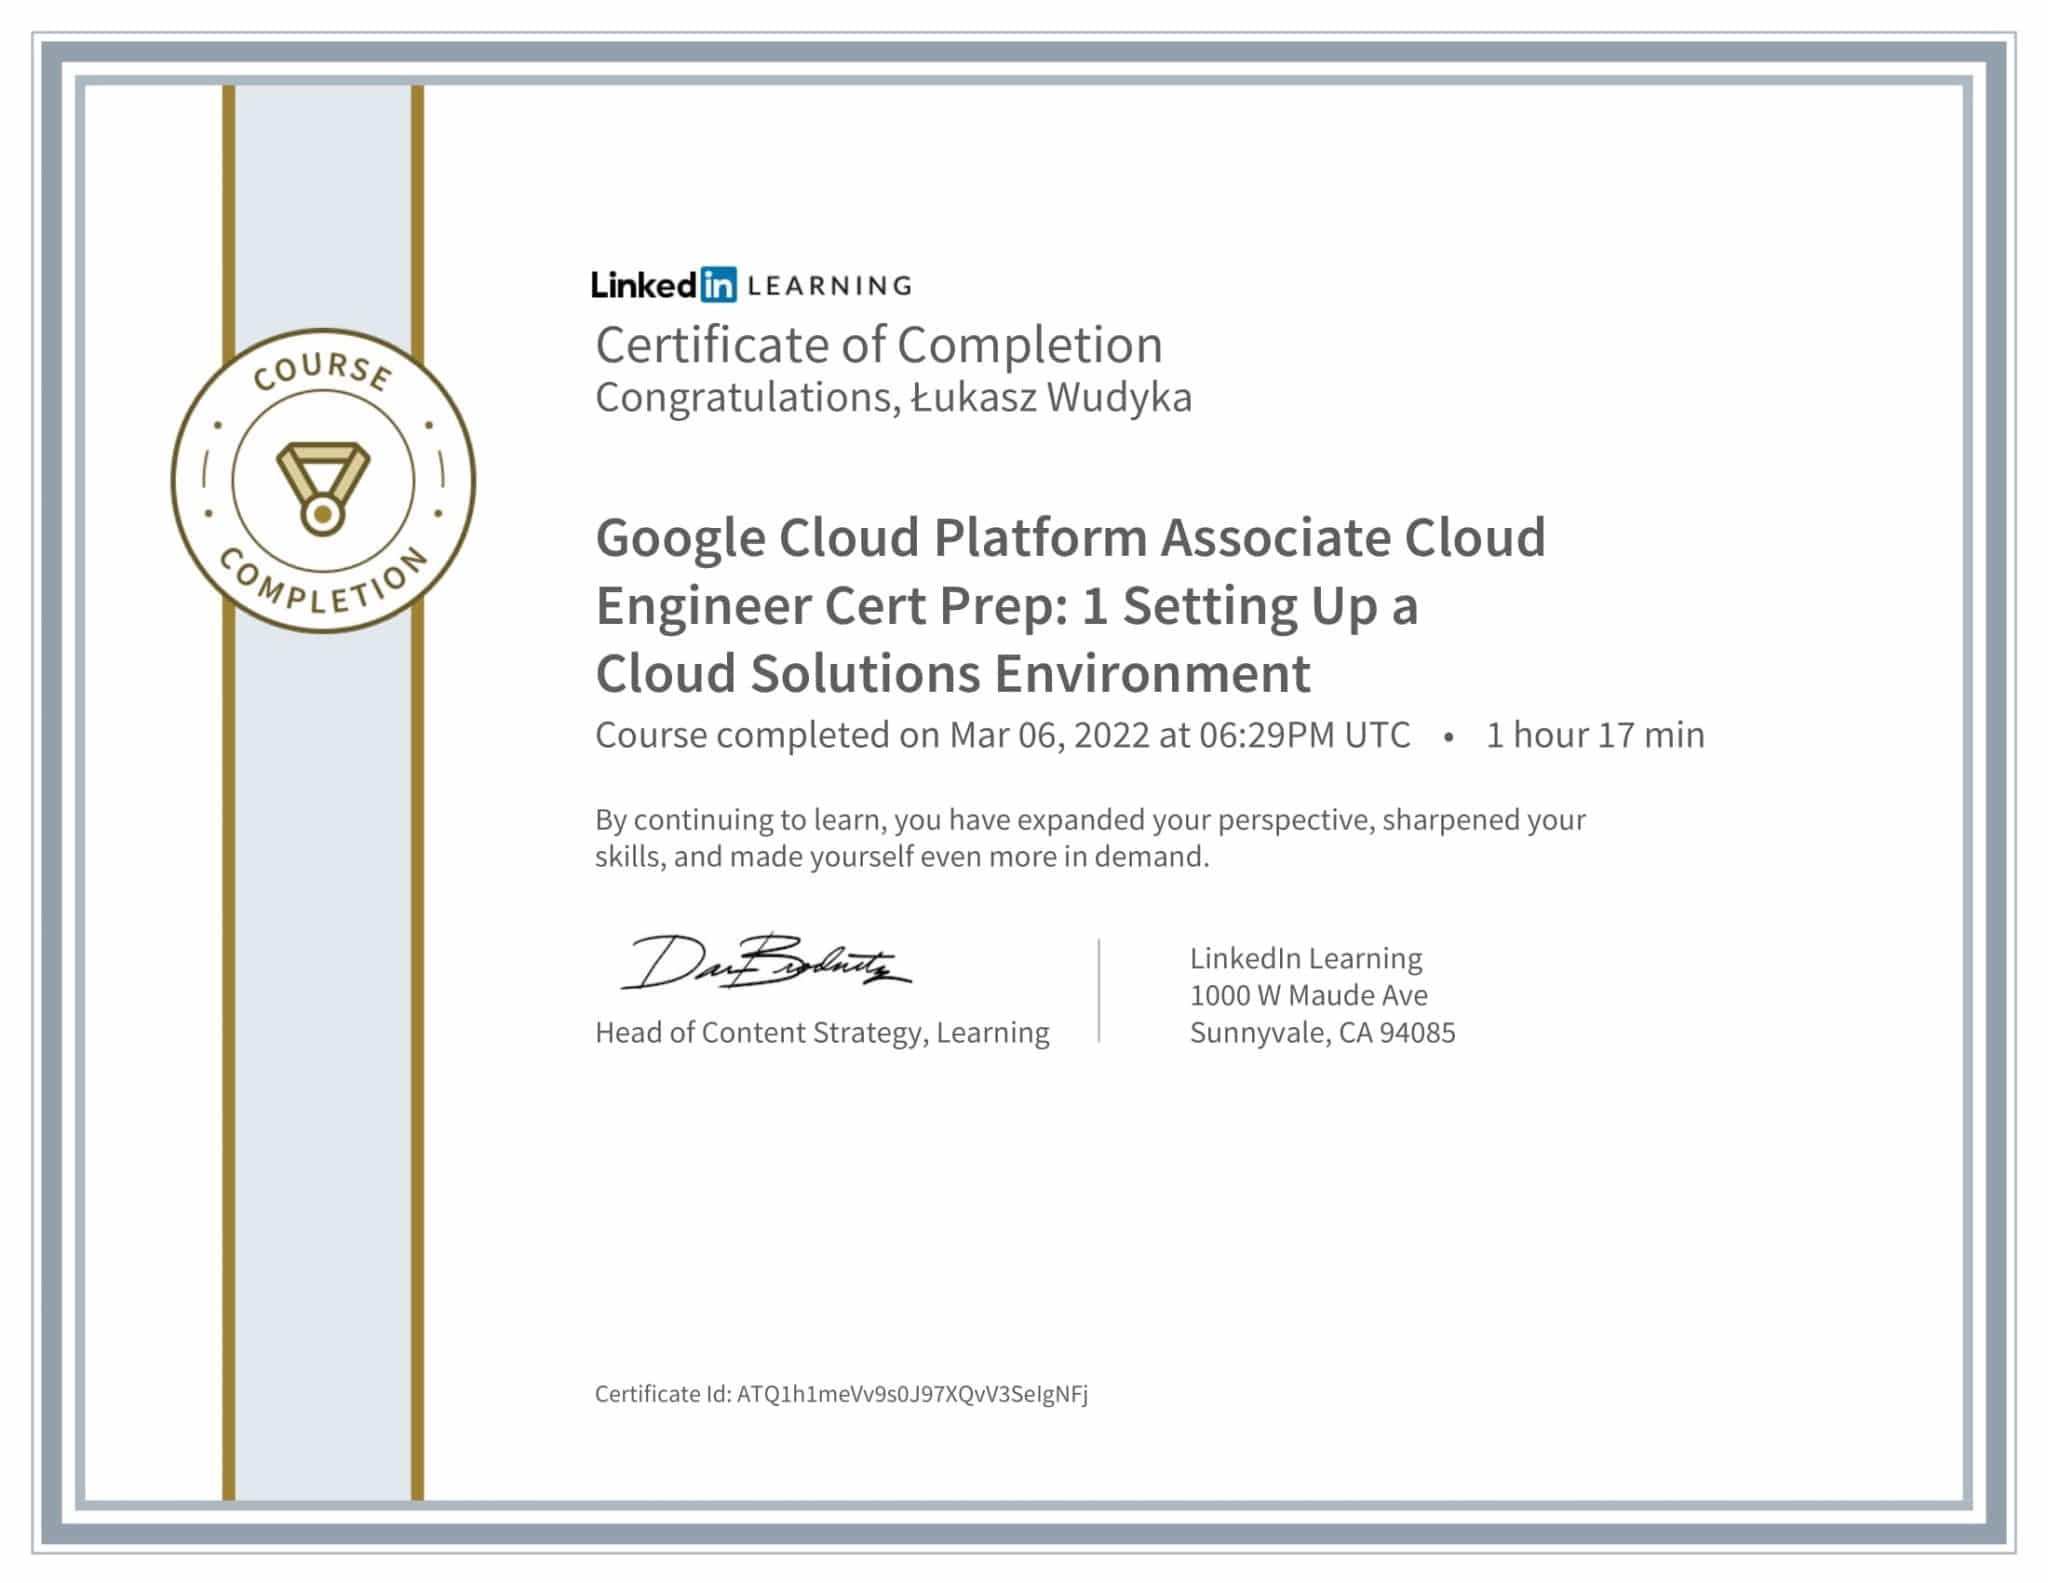 CertificateOfCompletion_Google Cloud Platform Associate Cloud Engineer Cert Prep 1 Setting Up a Cloud Solutions Environment-1